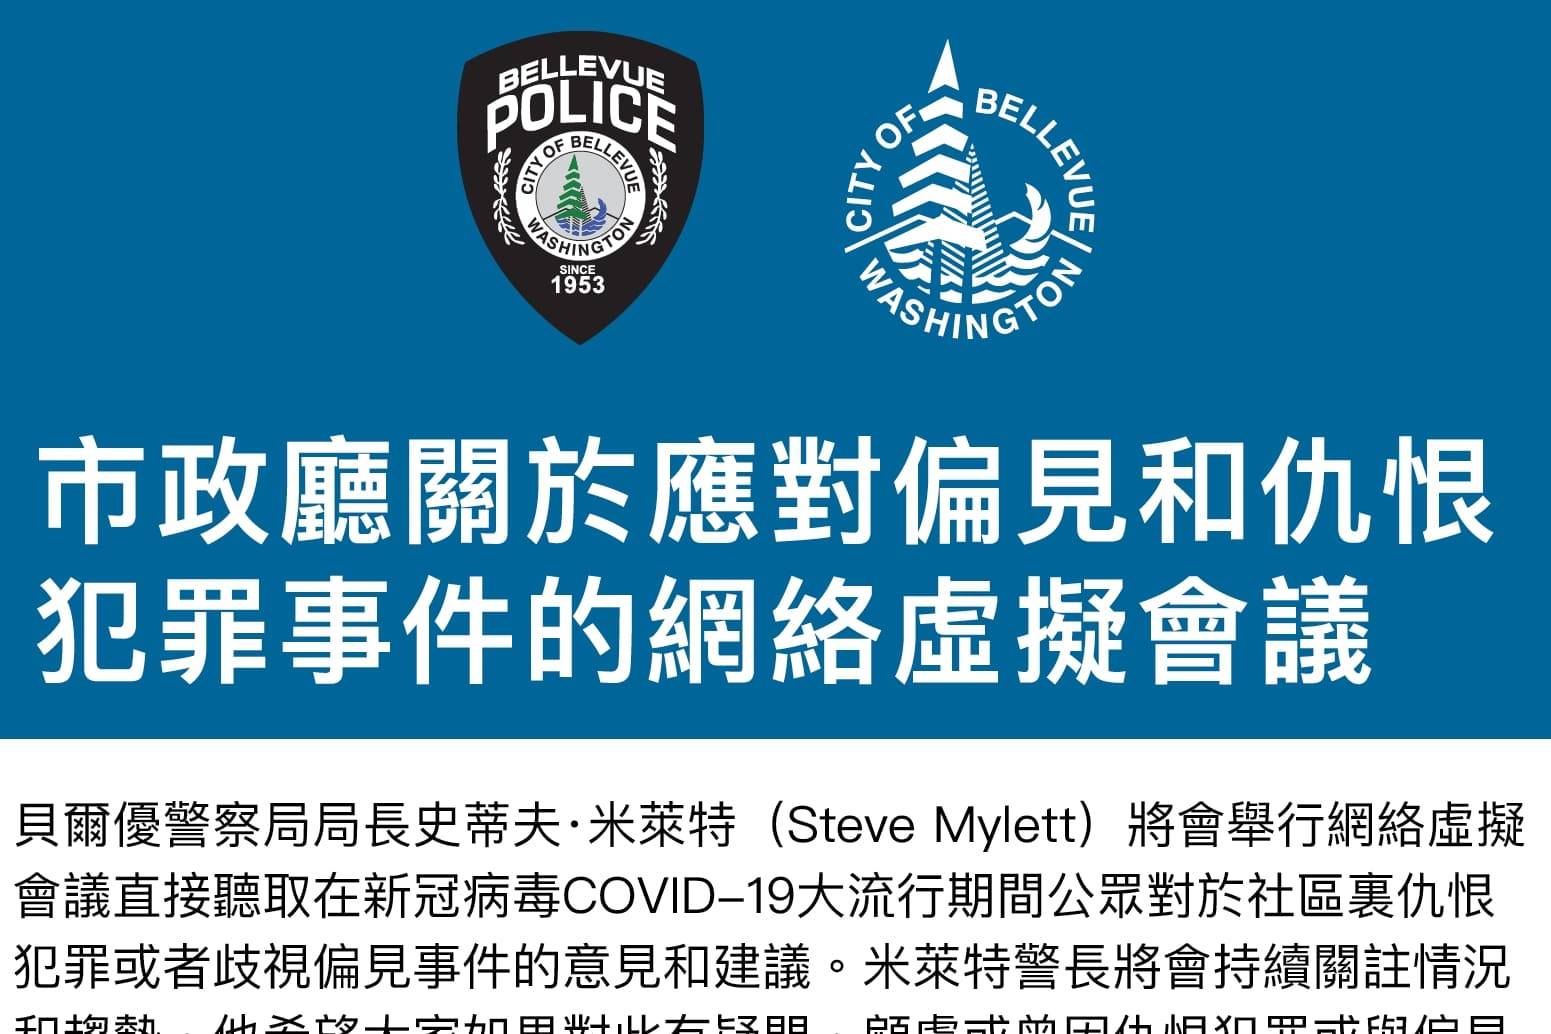 Bellevue police virtual town hall postponed